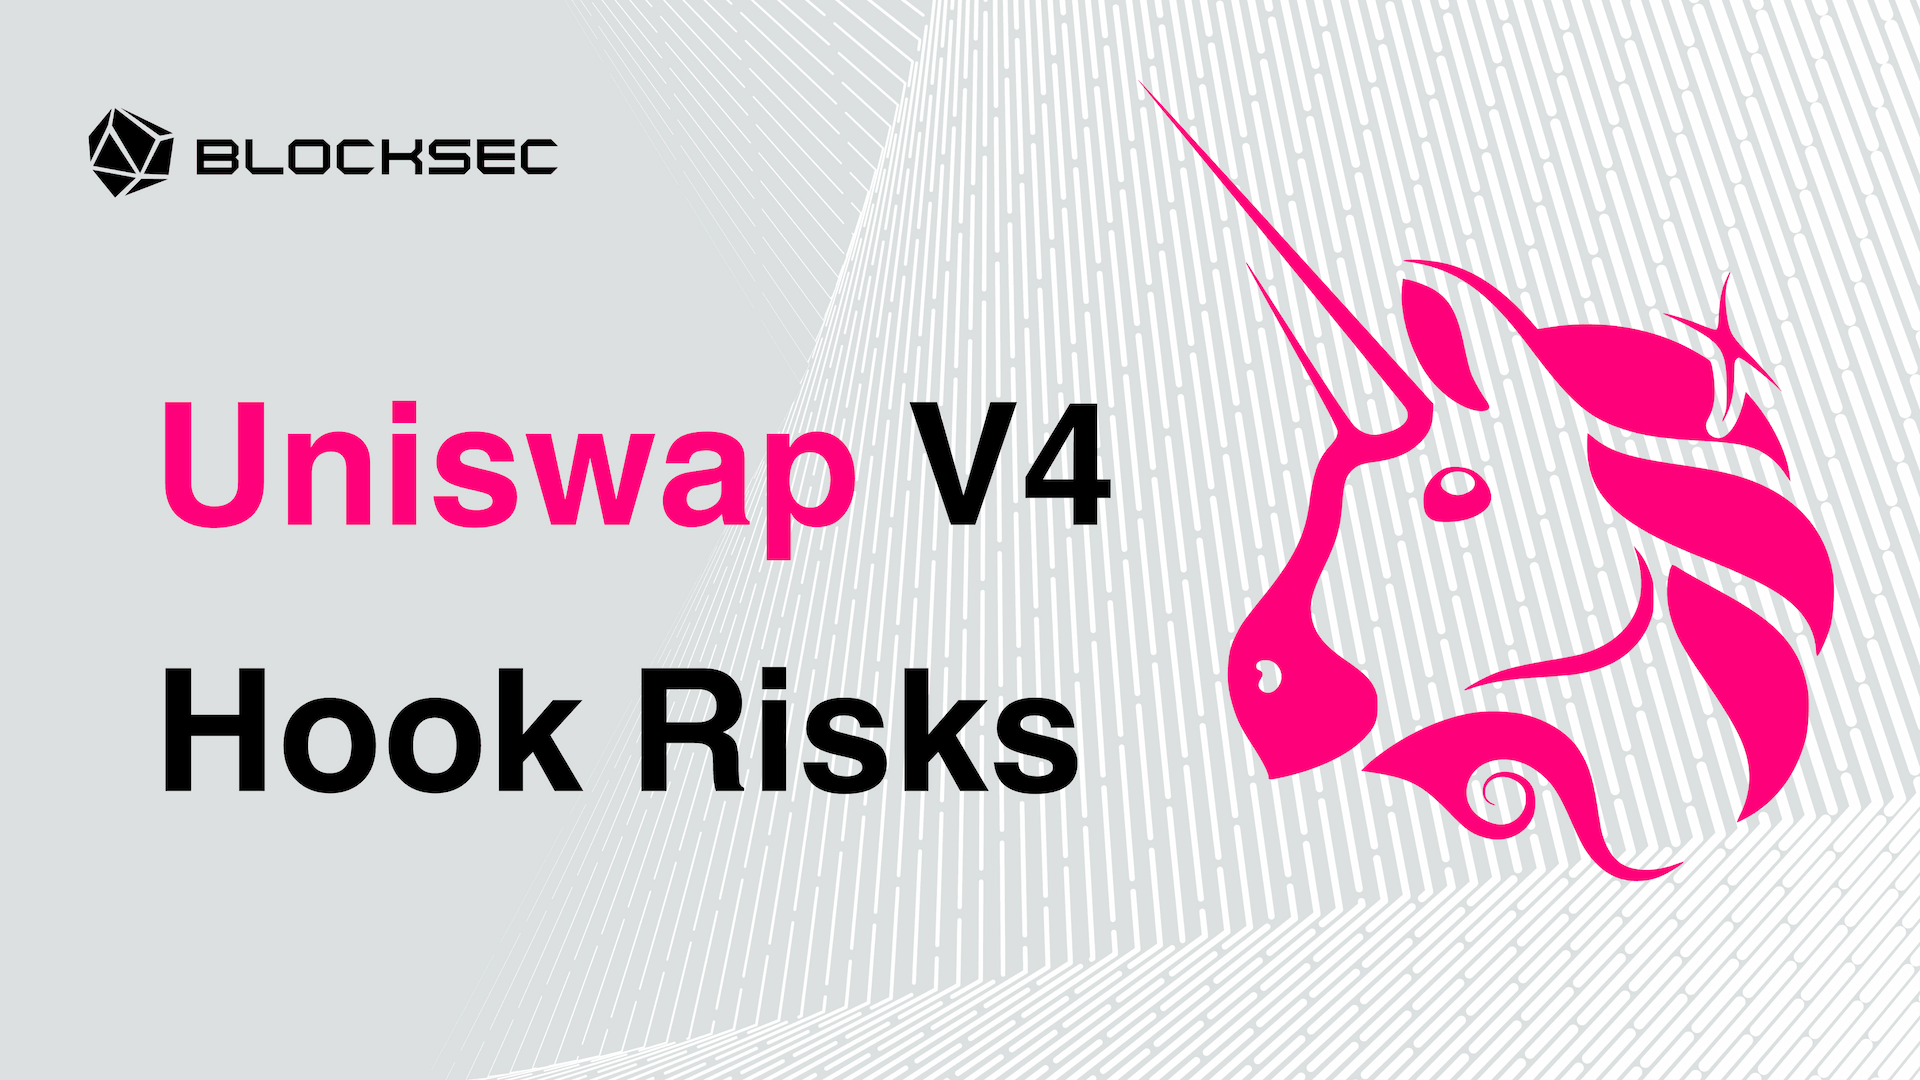 Lead in: Uniswap V4 Hook Risks